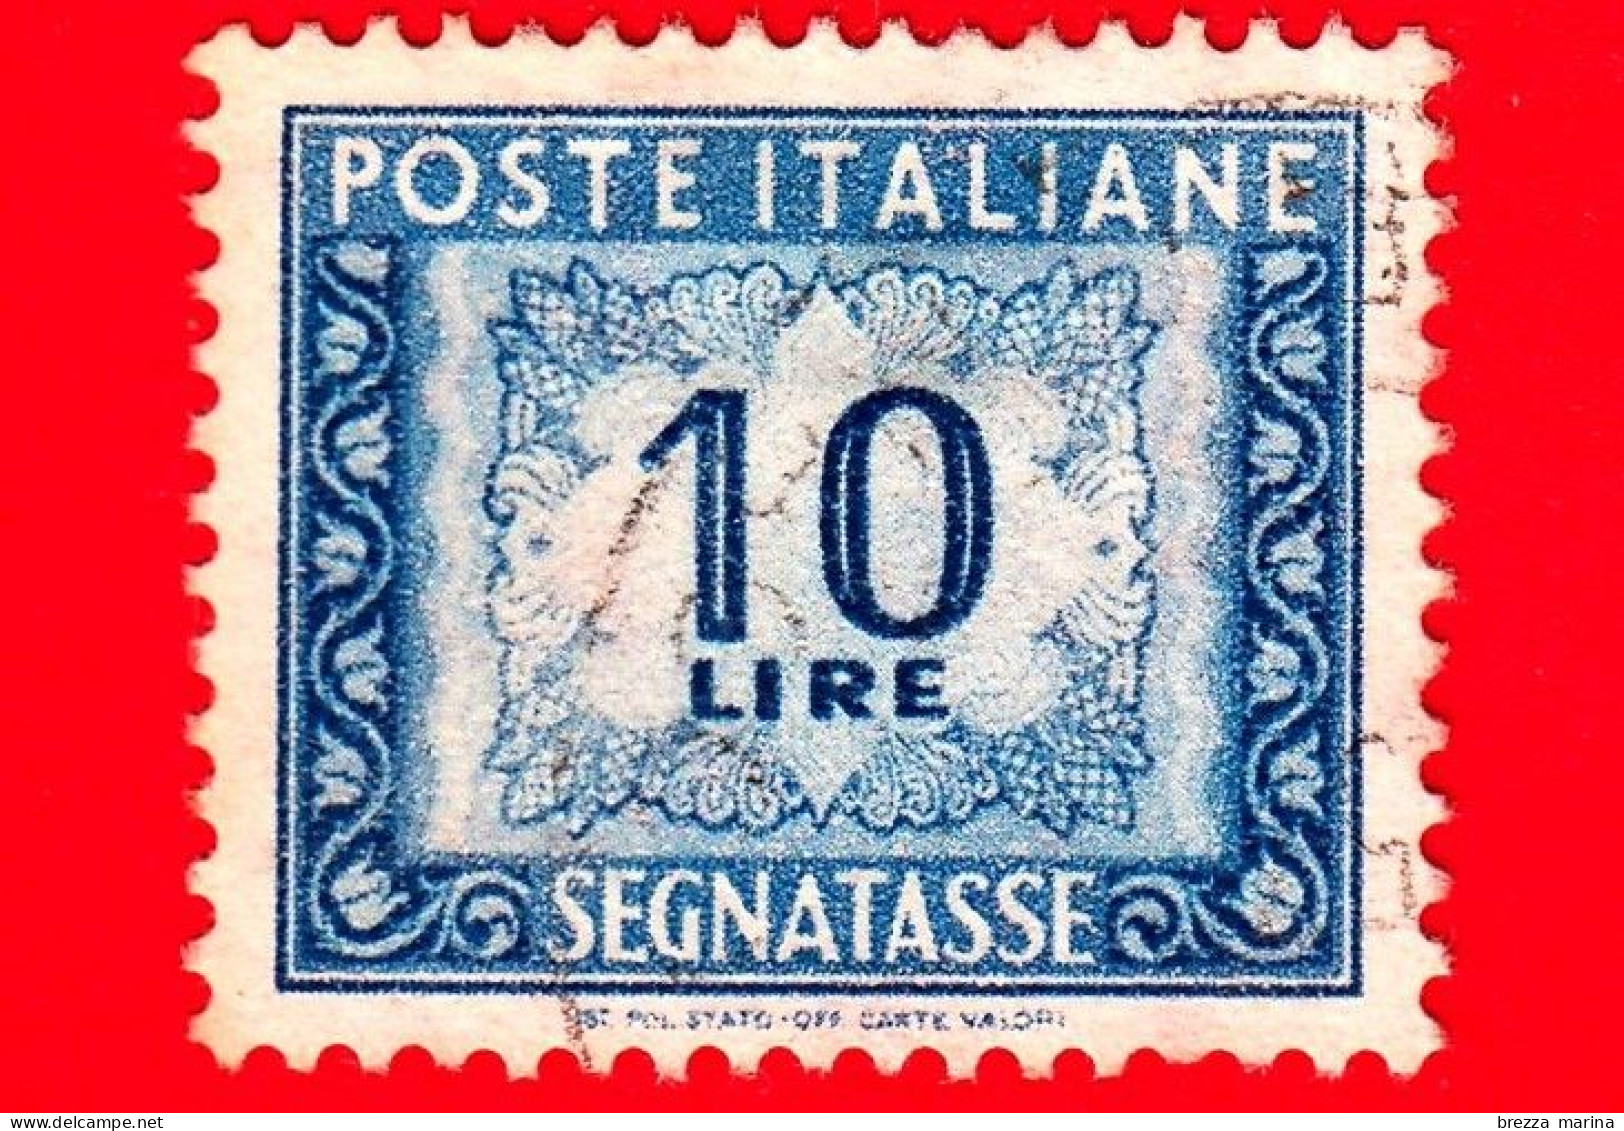 ITALIA - Usato - 1955 - Cifra E Decorazioni, Filigrana Stelle - Segnatasse - Cifra E Decorazioni - 10 L. - Strafport